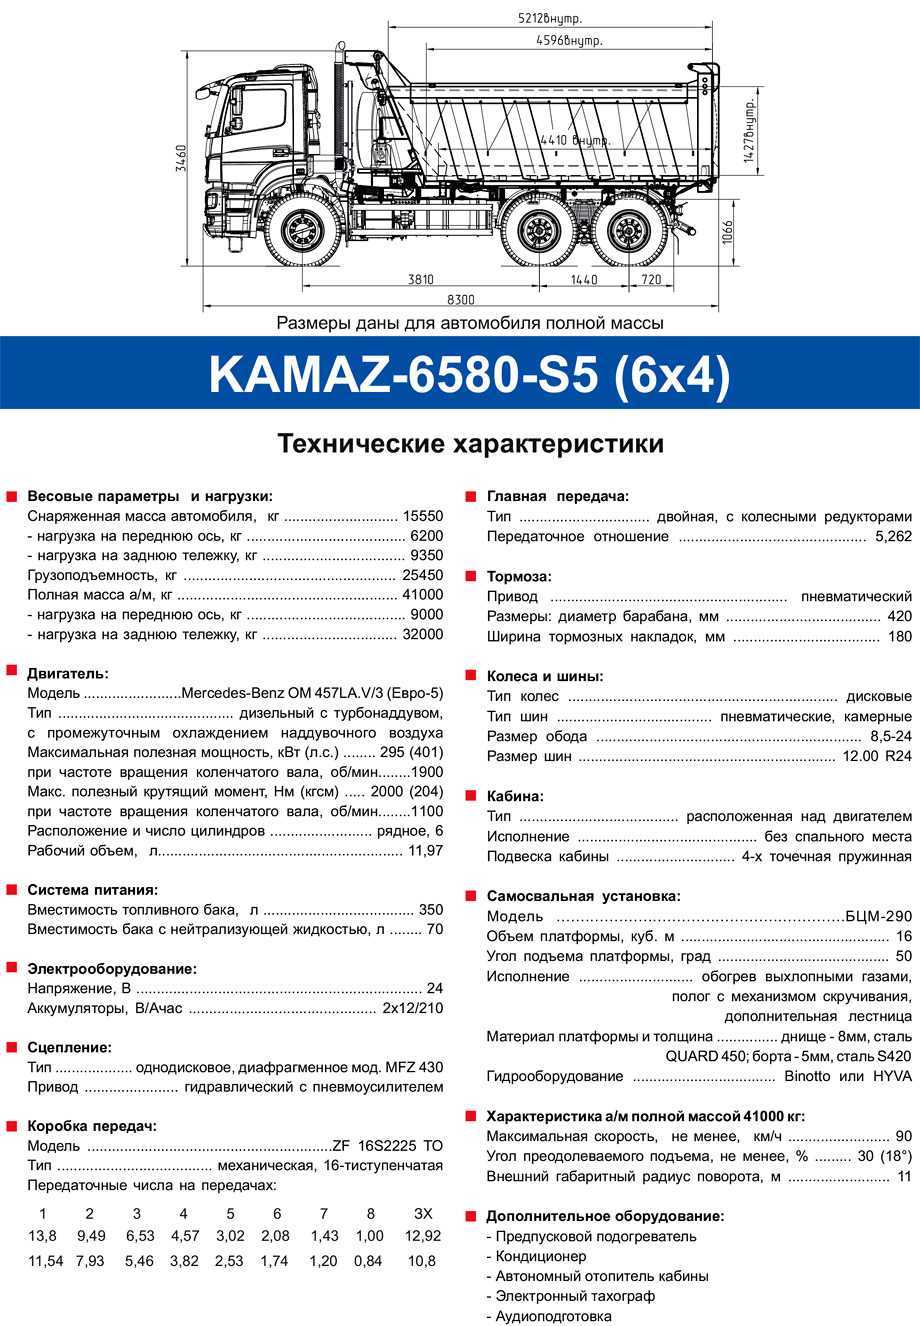 Камаз 55111 15 технические характеристики